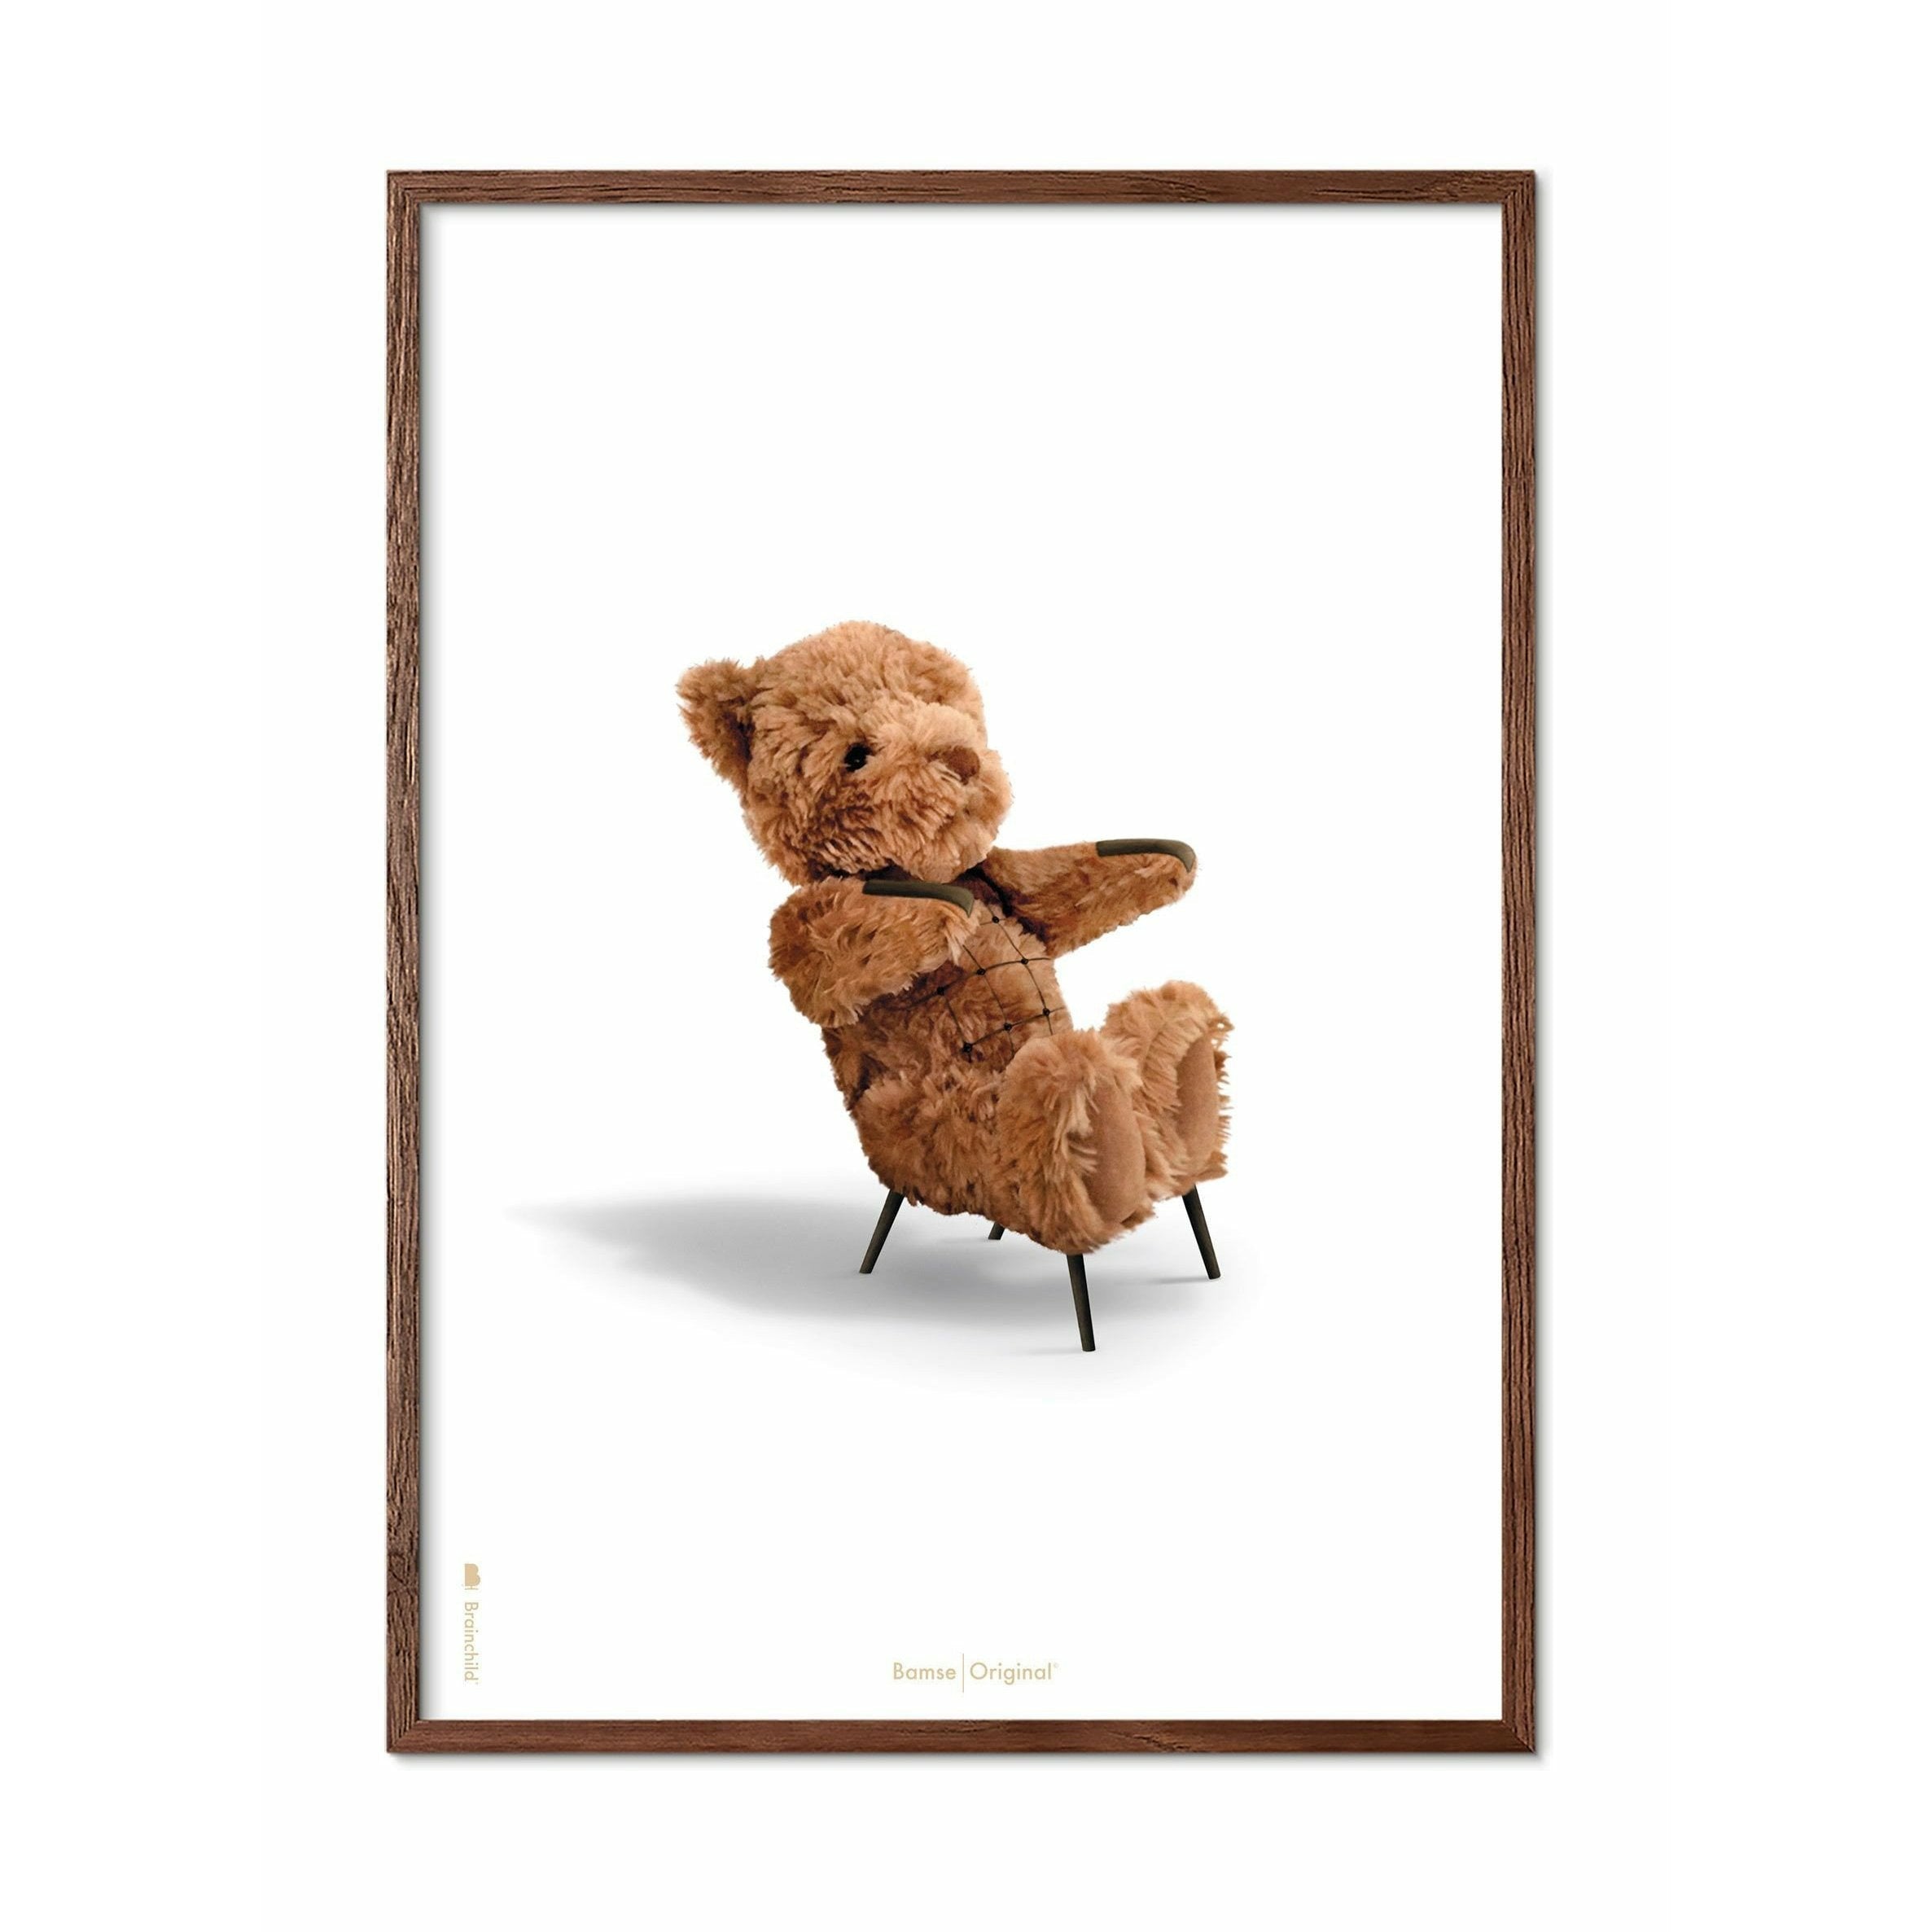 Brainchild Teddy Bear Classic Poster, Frame Made of Dark Wood 70x100 cm, hvit bakgrunn